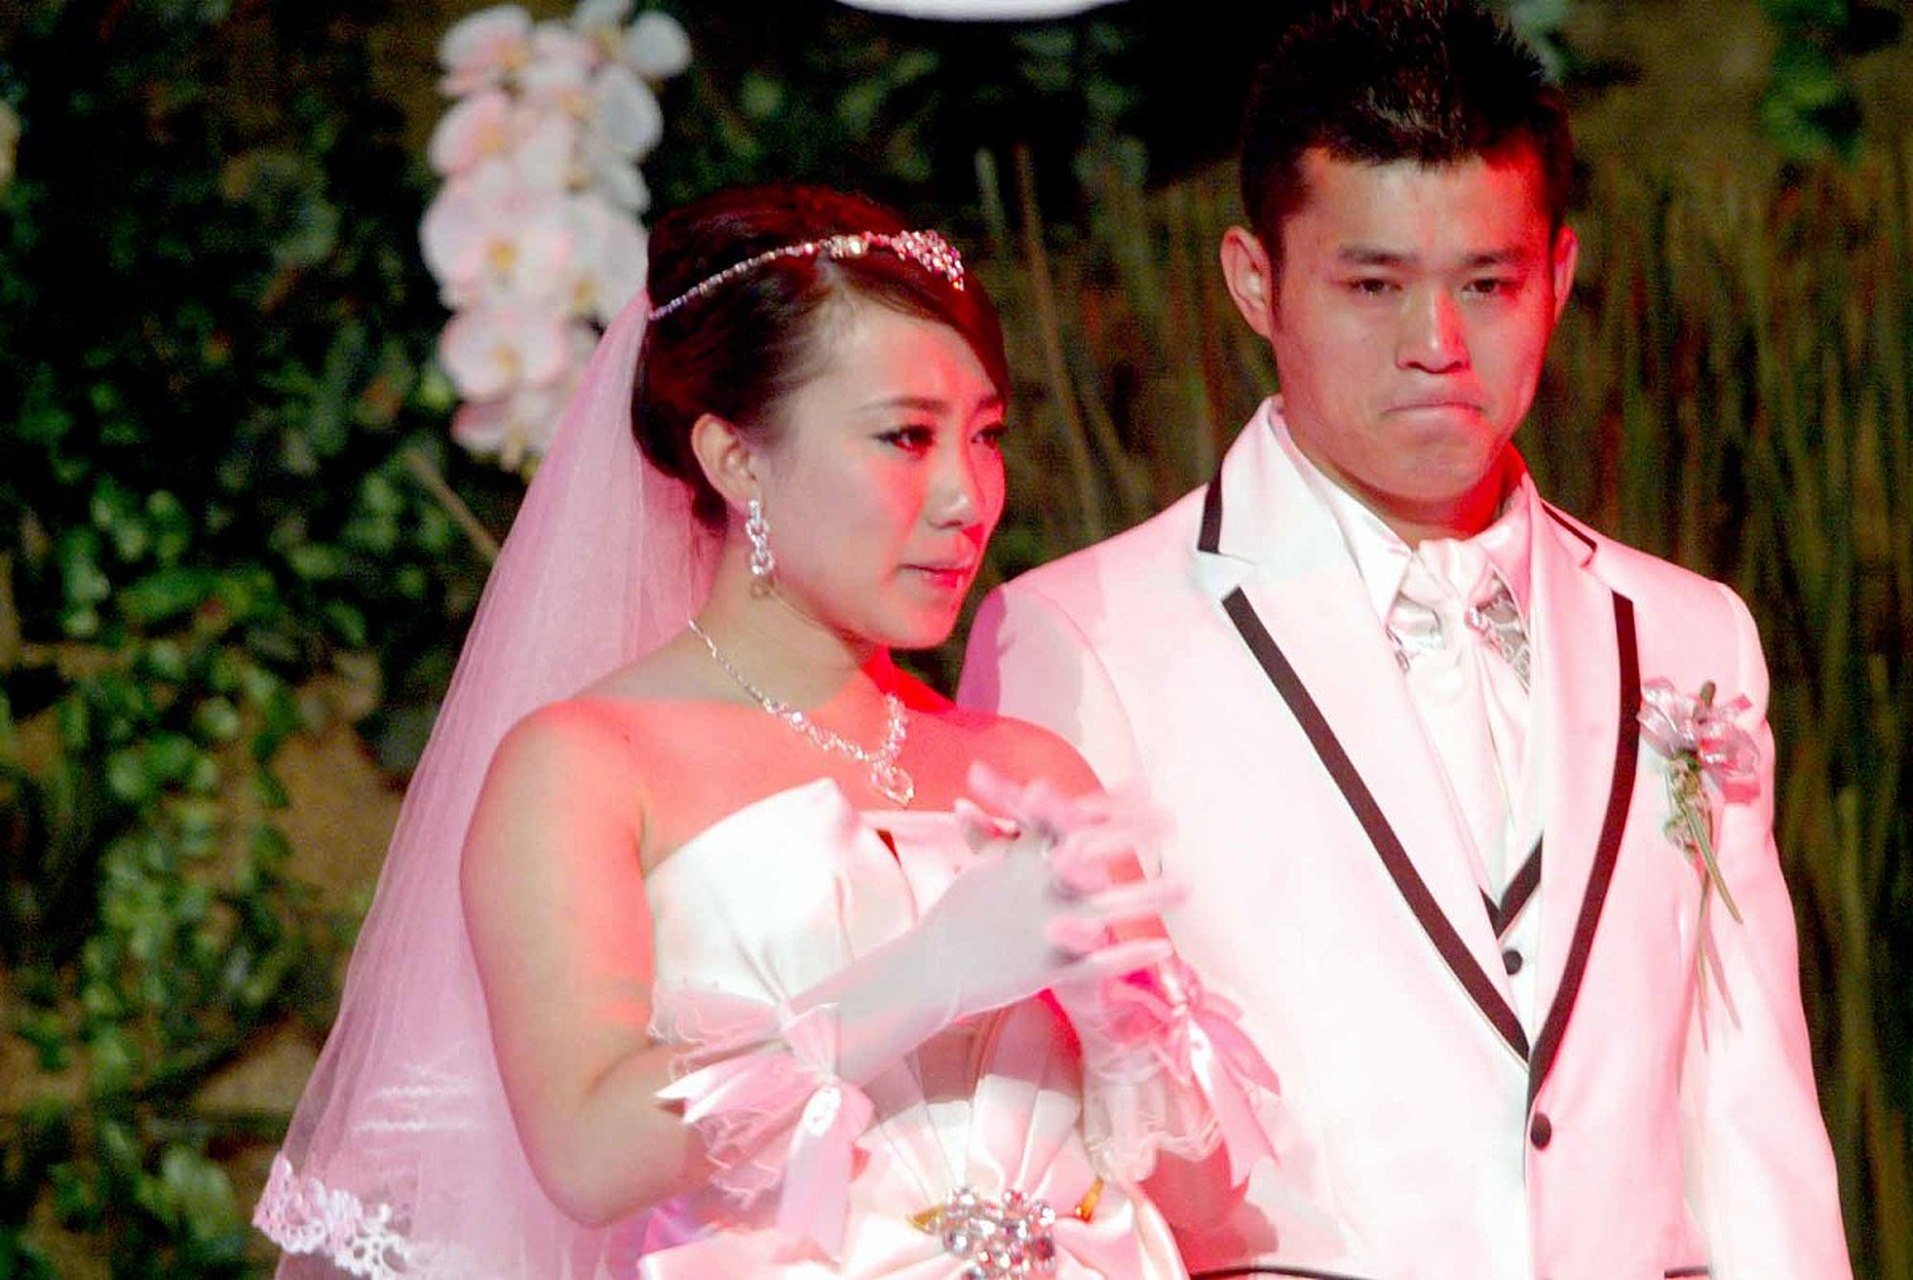 当年,在丫蛋和王金龙的婚礼上,赵本山对新人说道:千万别离婚,不然在圈